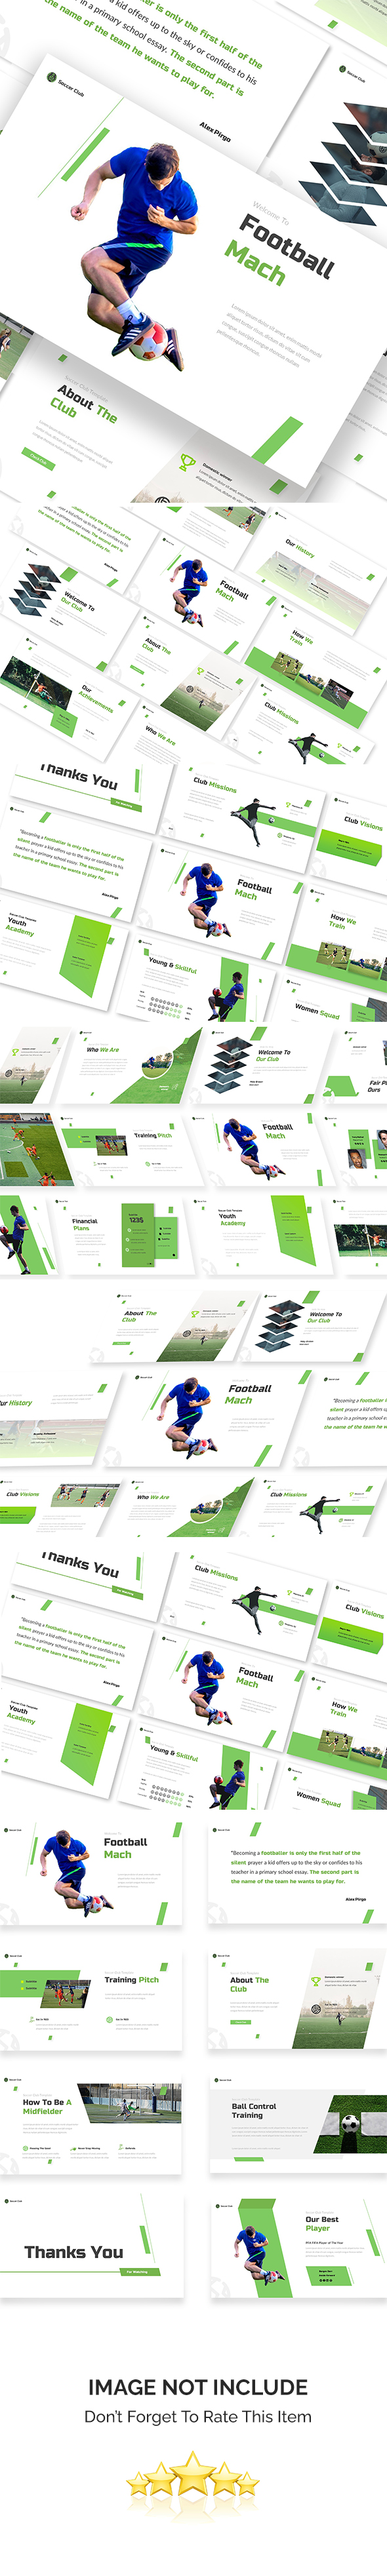 Football Mach Google Slides Template